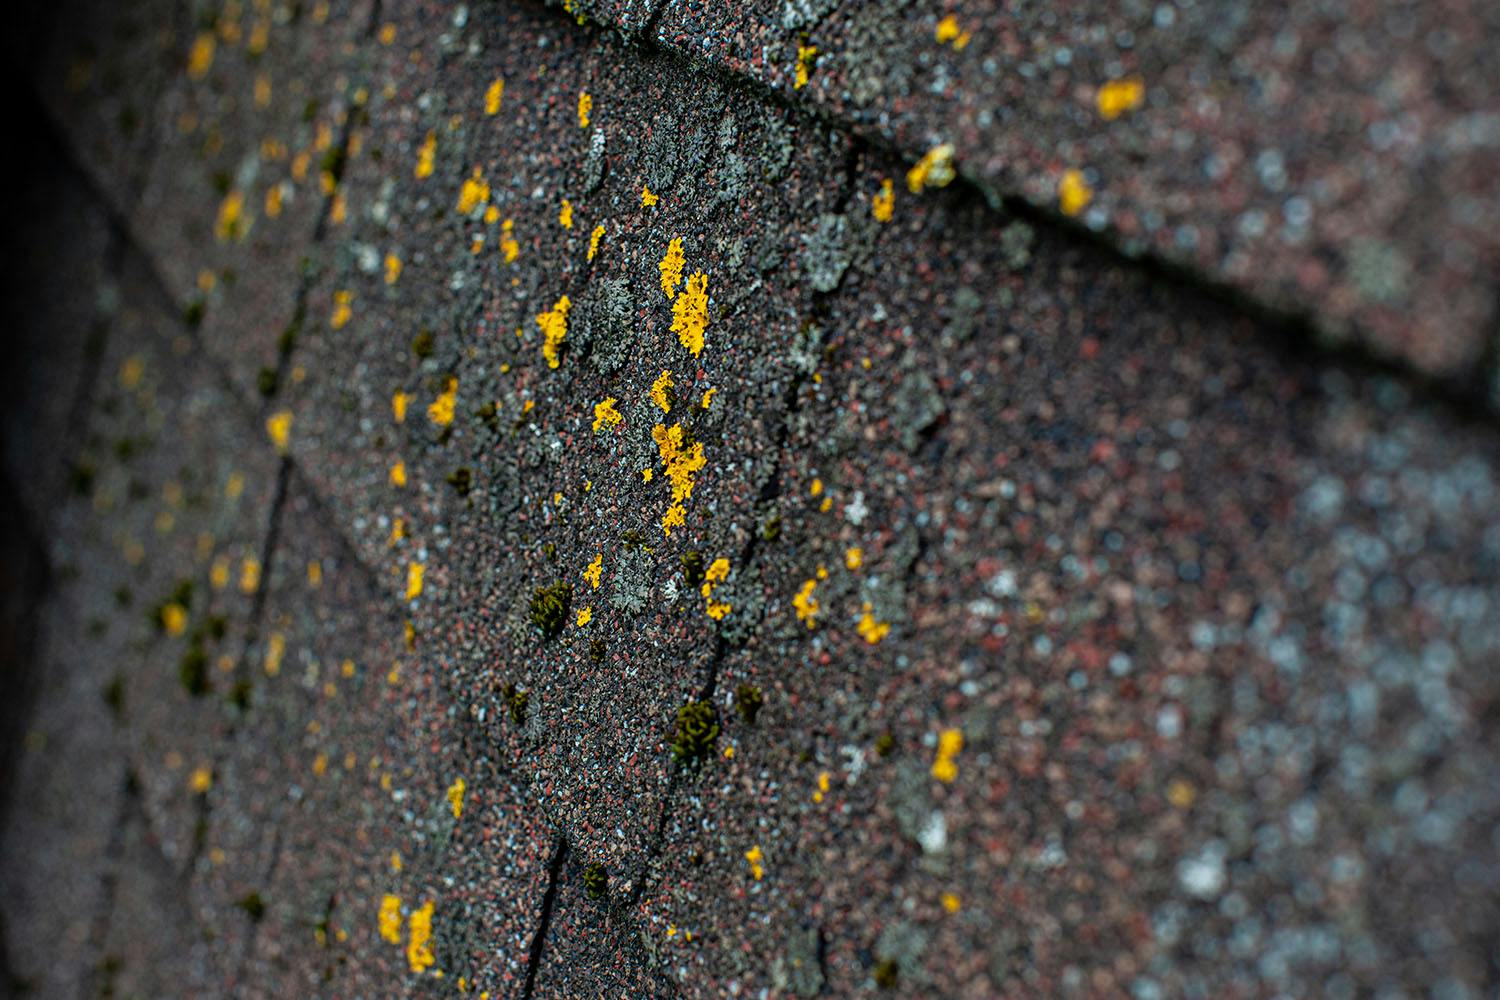 Mold growing on shingle roof